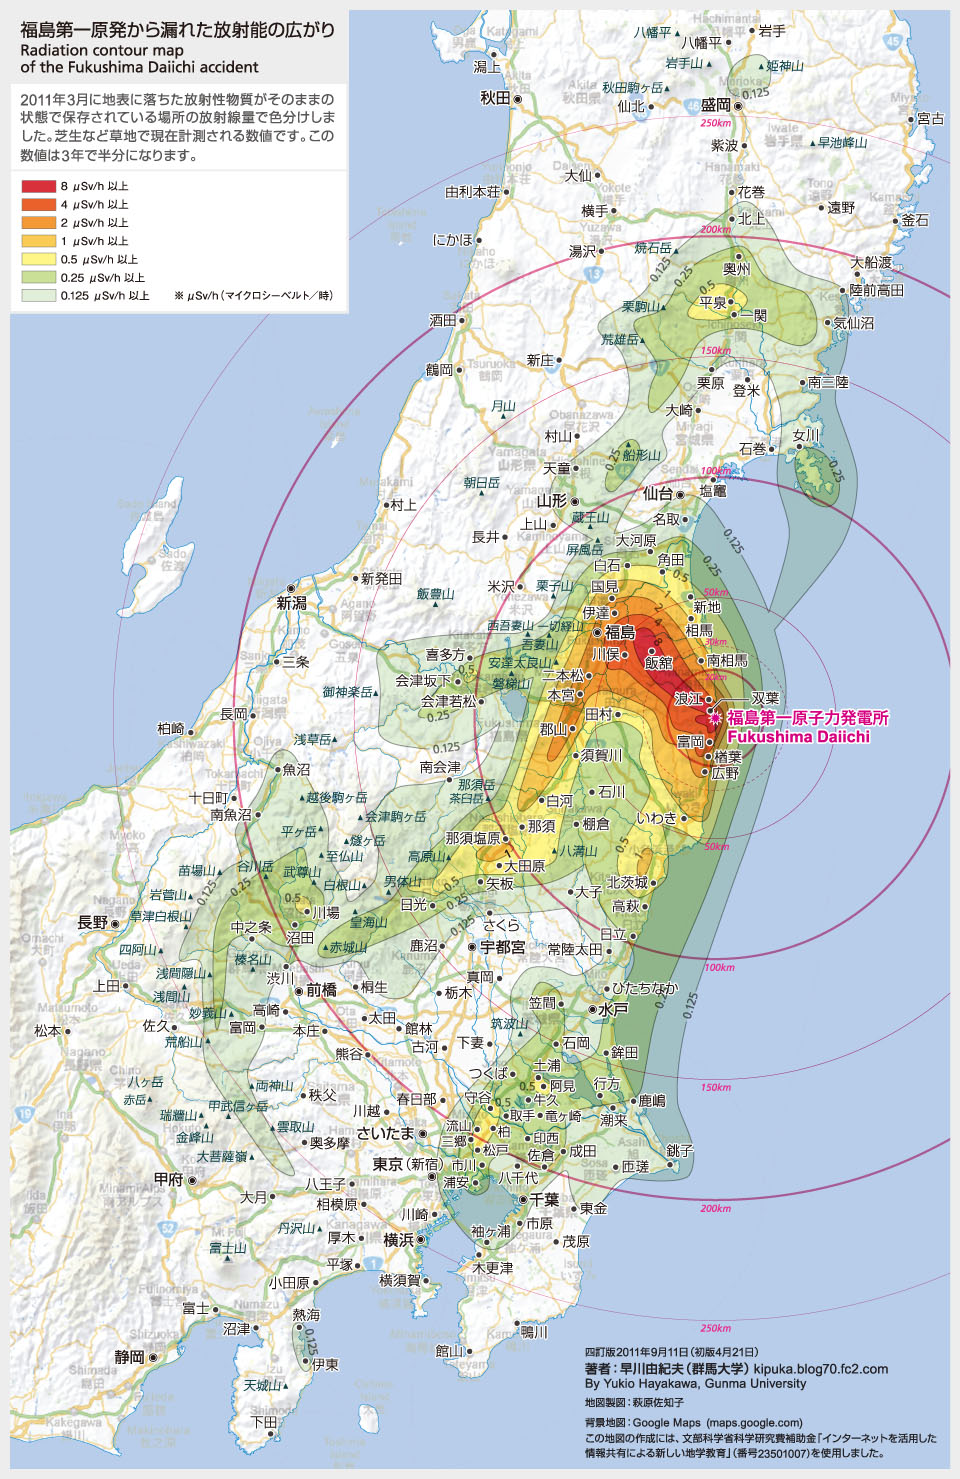 震災一ヵ月半前のイルミナティの会合で示された日本地図には東北地方が描かれていなかった 僕はあきらめた